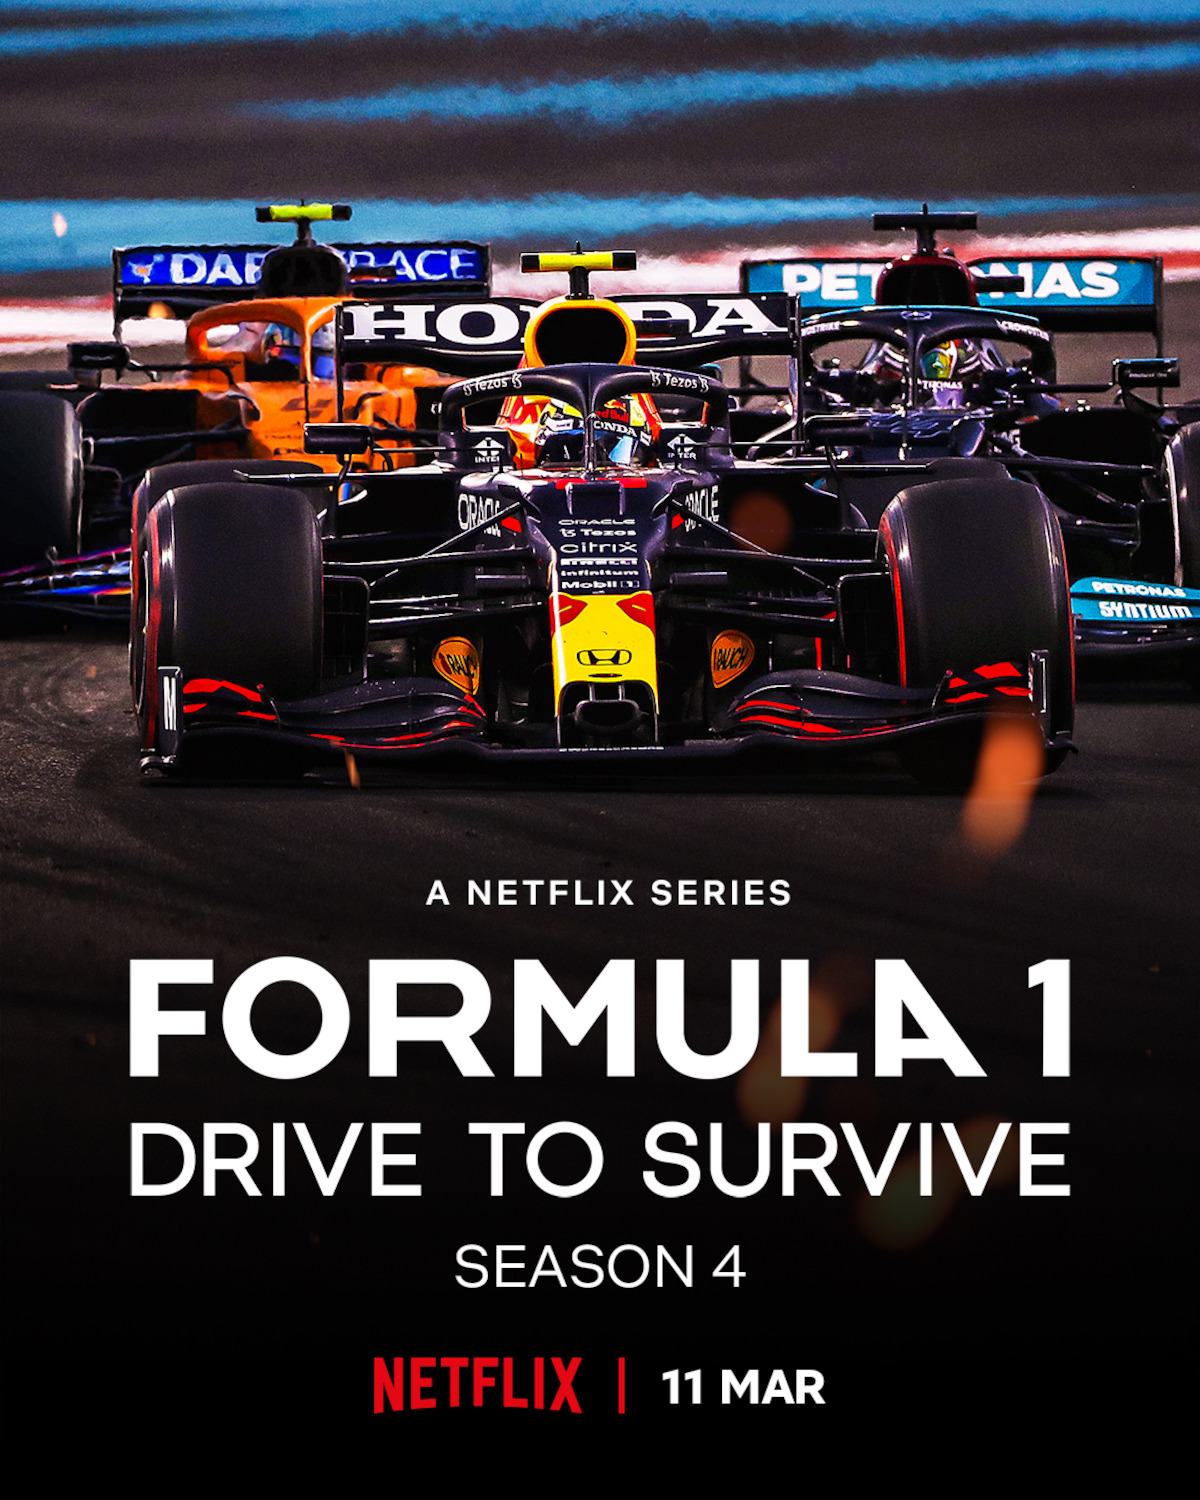 Formula 1 launches new fan engagement platform